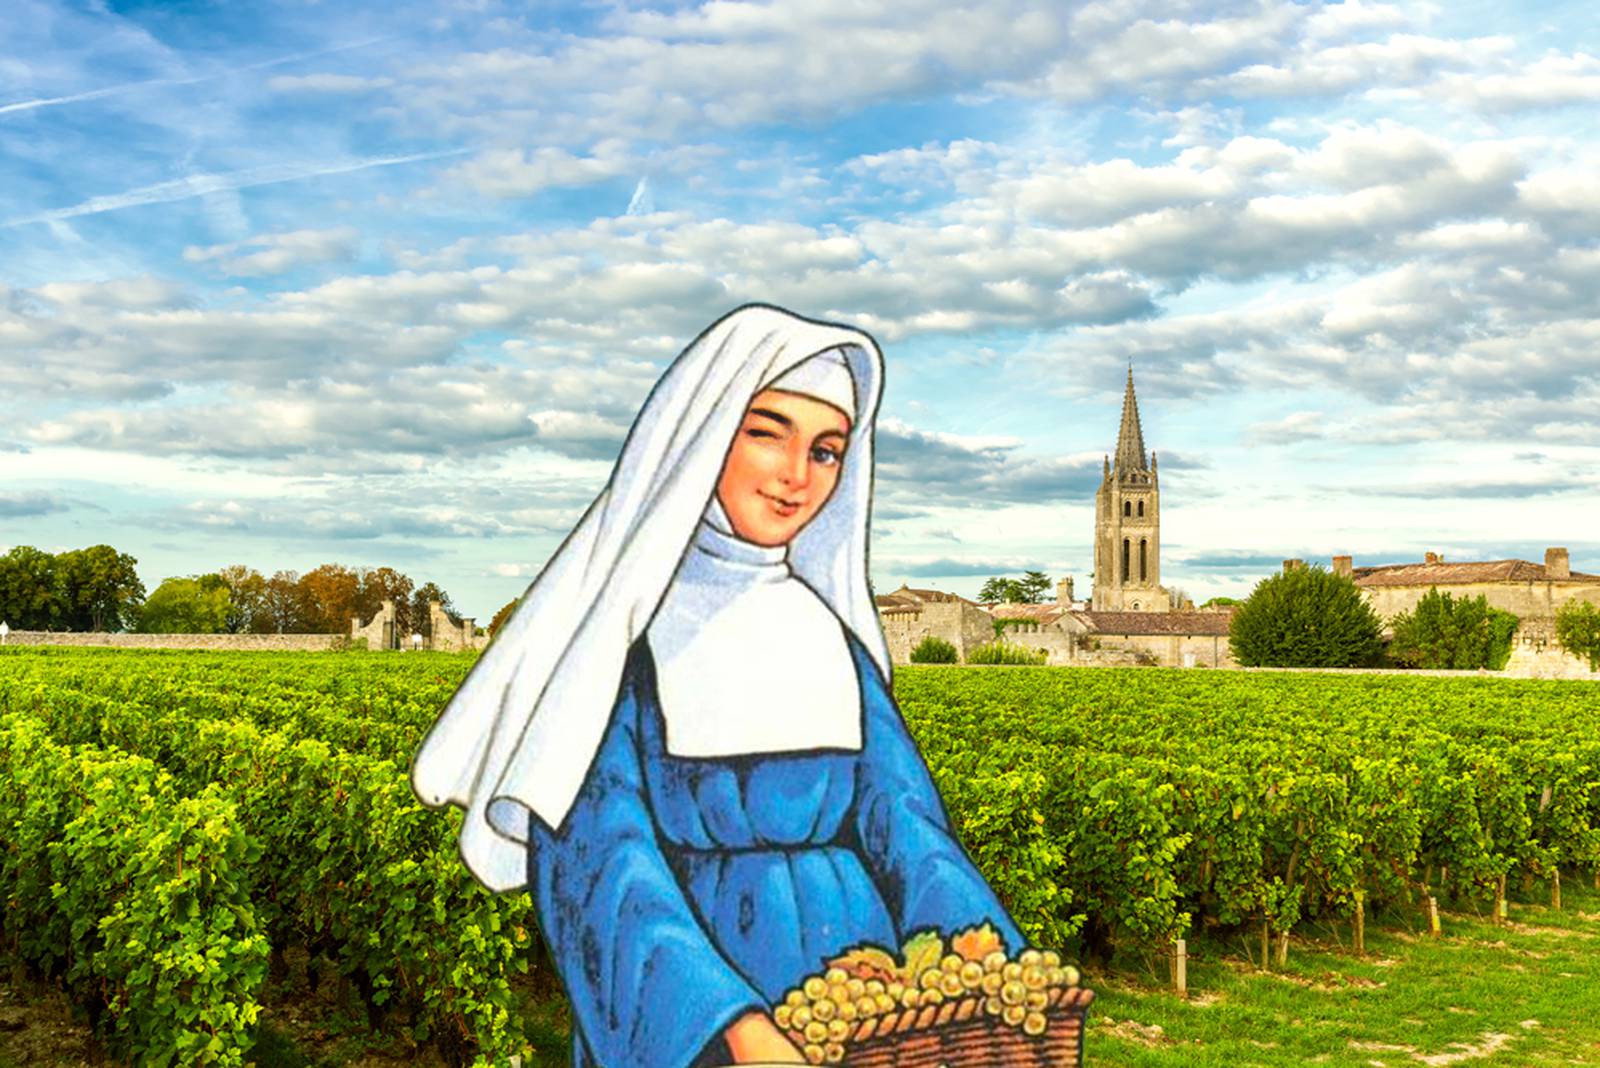 Blue Nun illustration